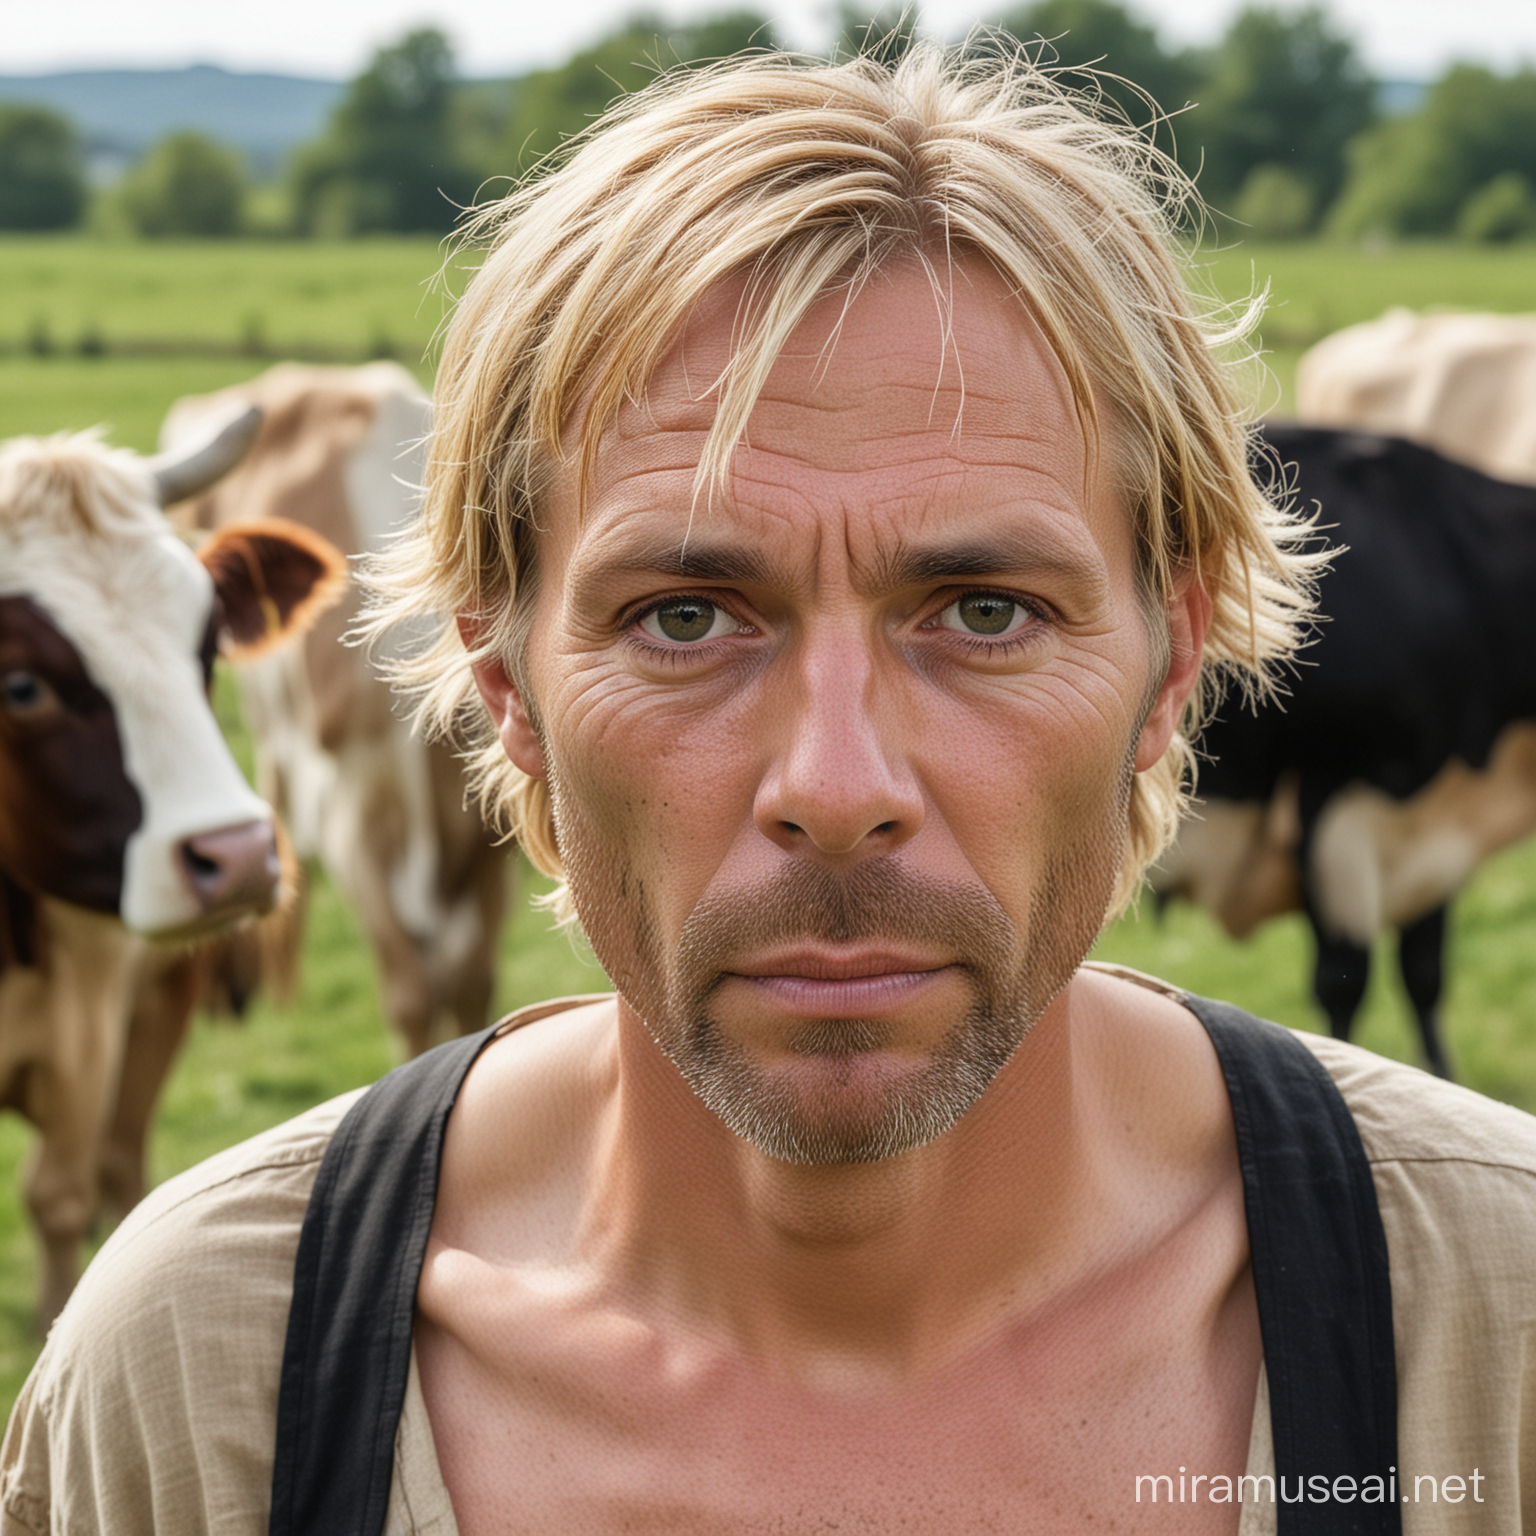 Homme, 45 ans, visage rond mais amaigri, yeux noirs et cheveux blonds. Dans le fond des vaches dans un pâturage. Une tenue de fermier dans l'antiquité